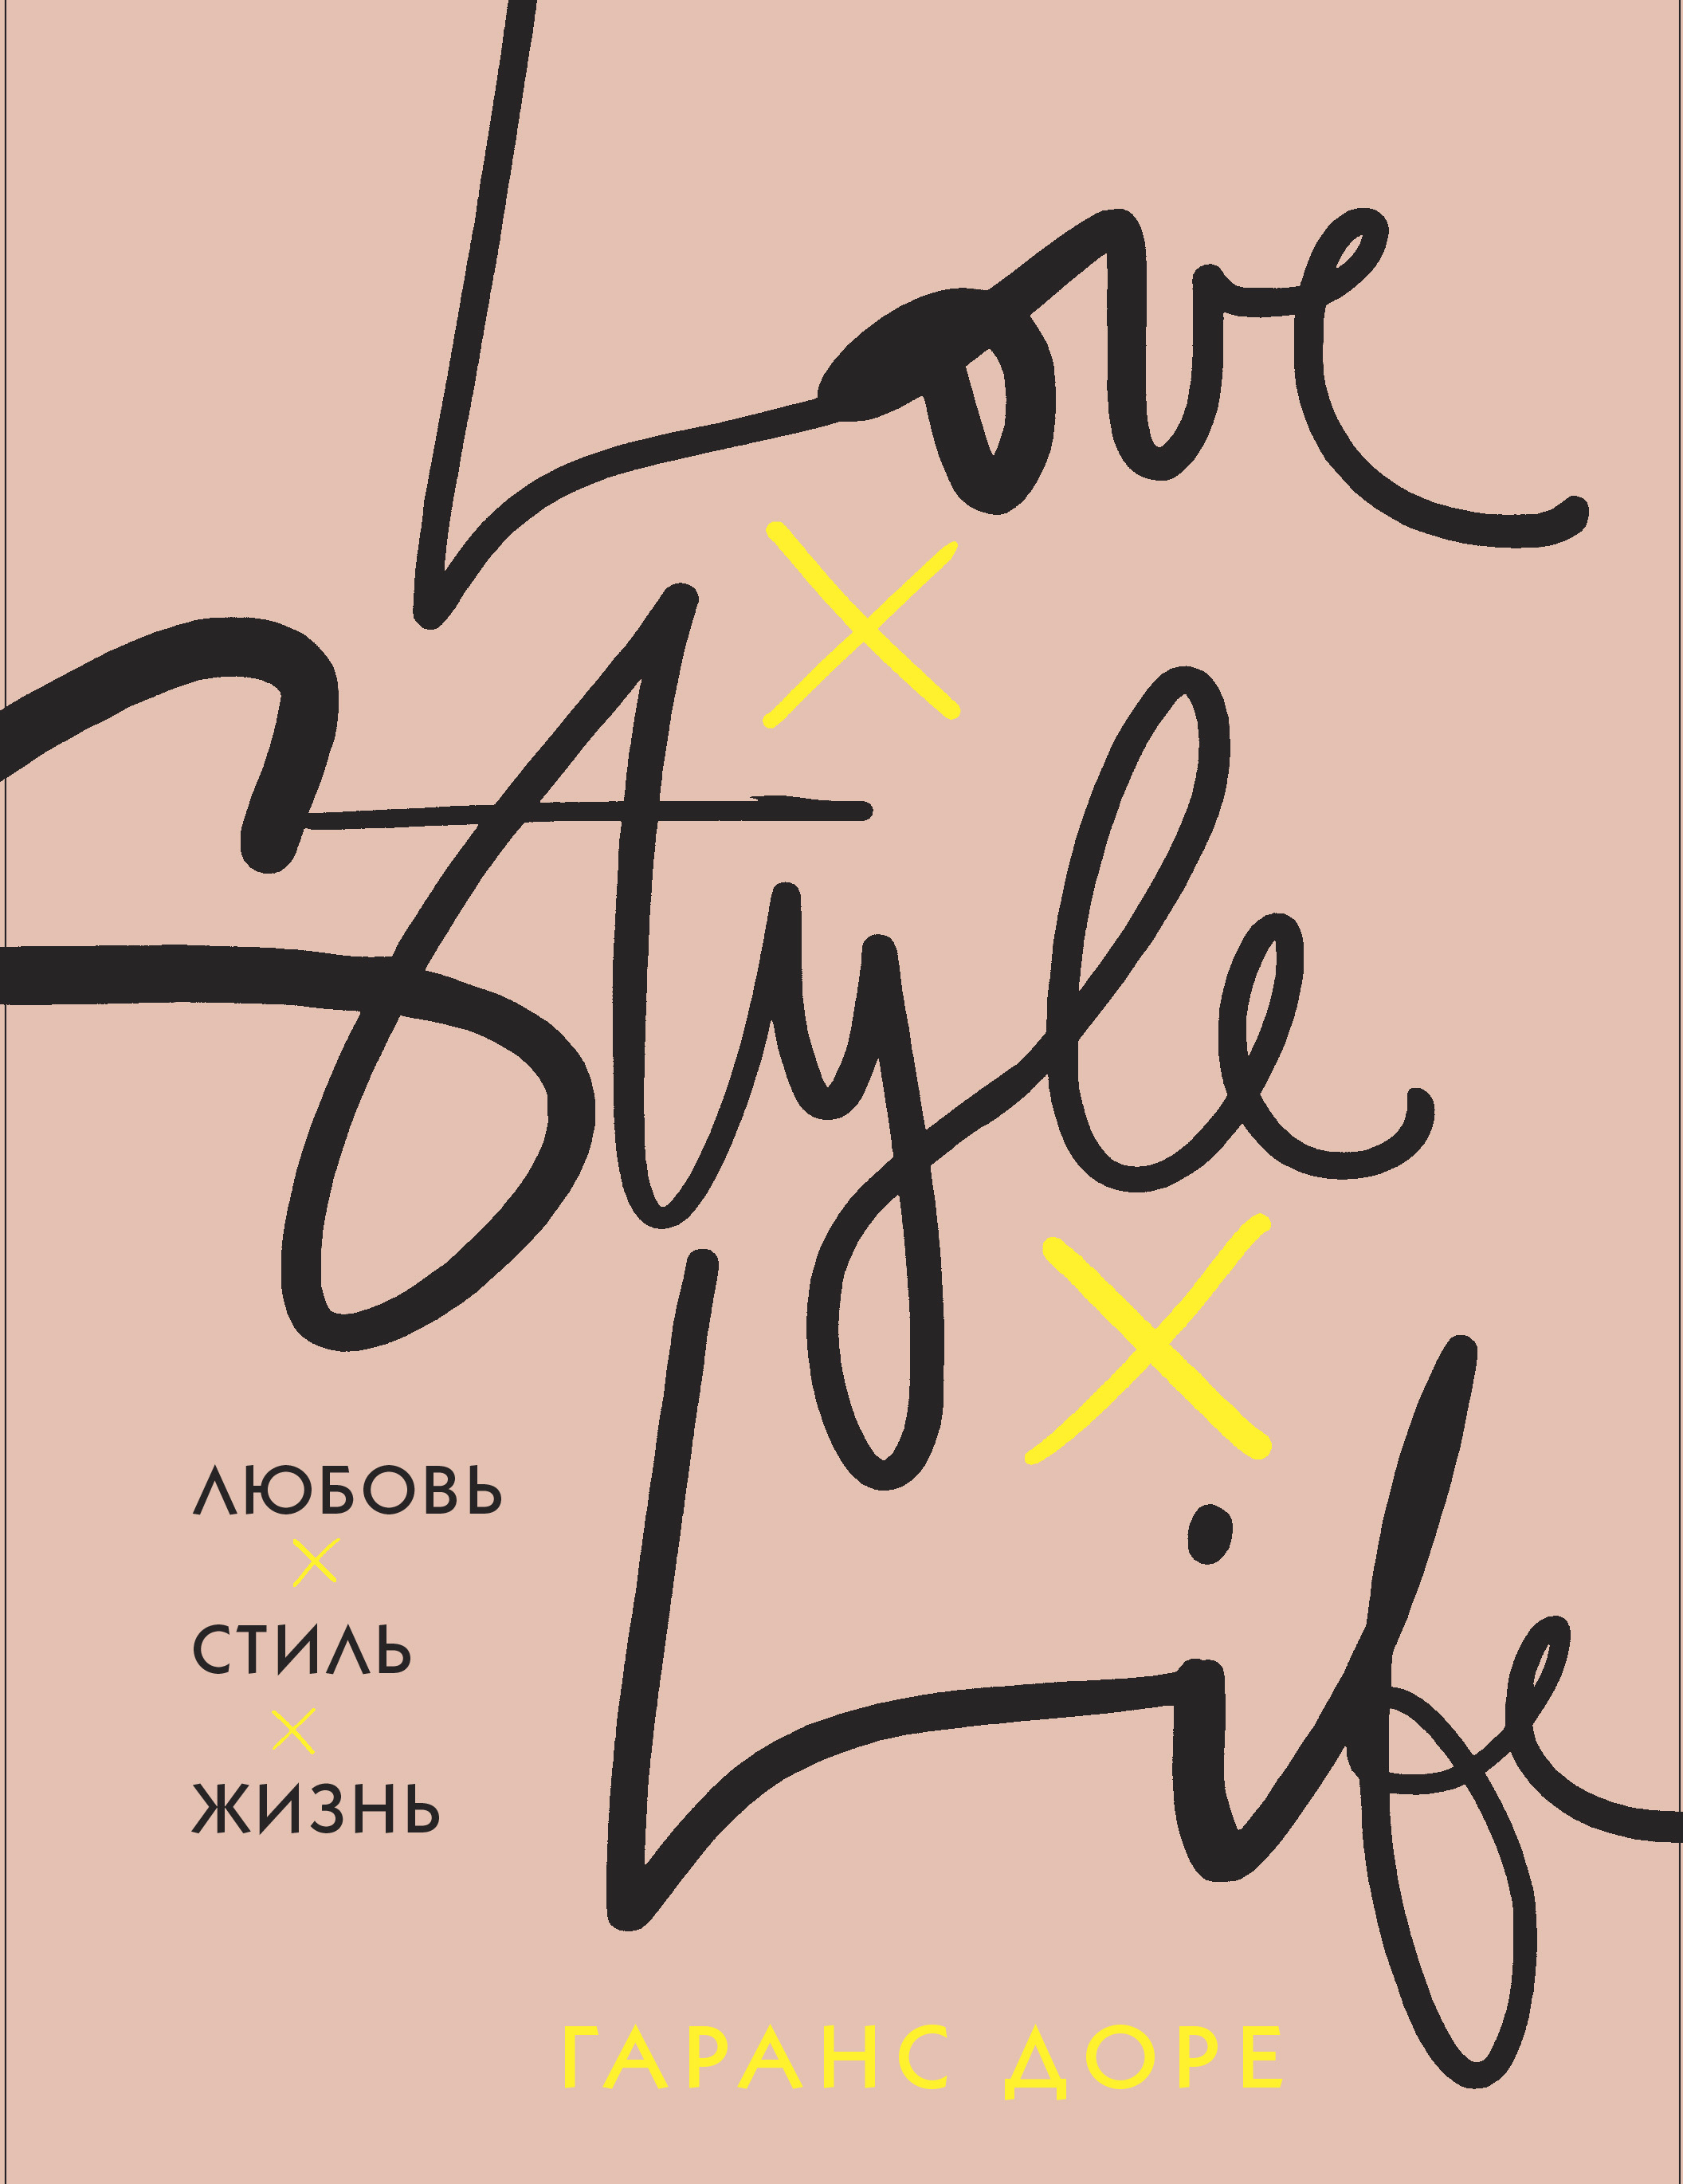 Life is style. Гаранс Доре любовь стиль жизнь. Любовь. Стиль. Жизнь Гаранс Доре книга. Love Style Life книга. Гаранс Доре книга.